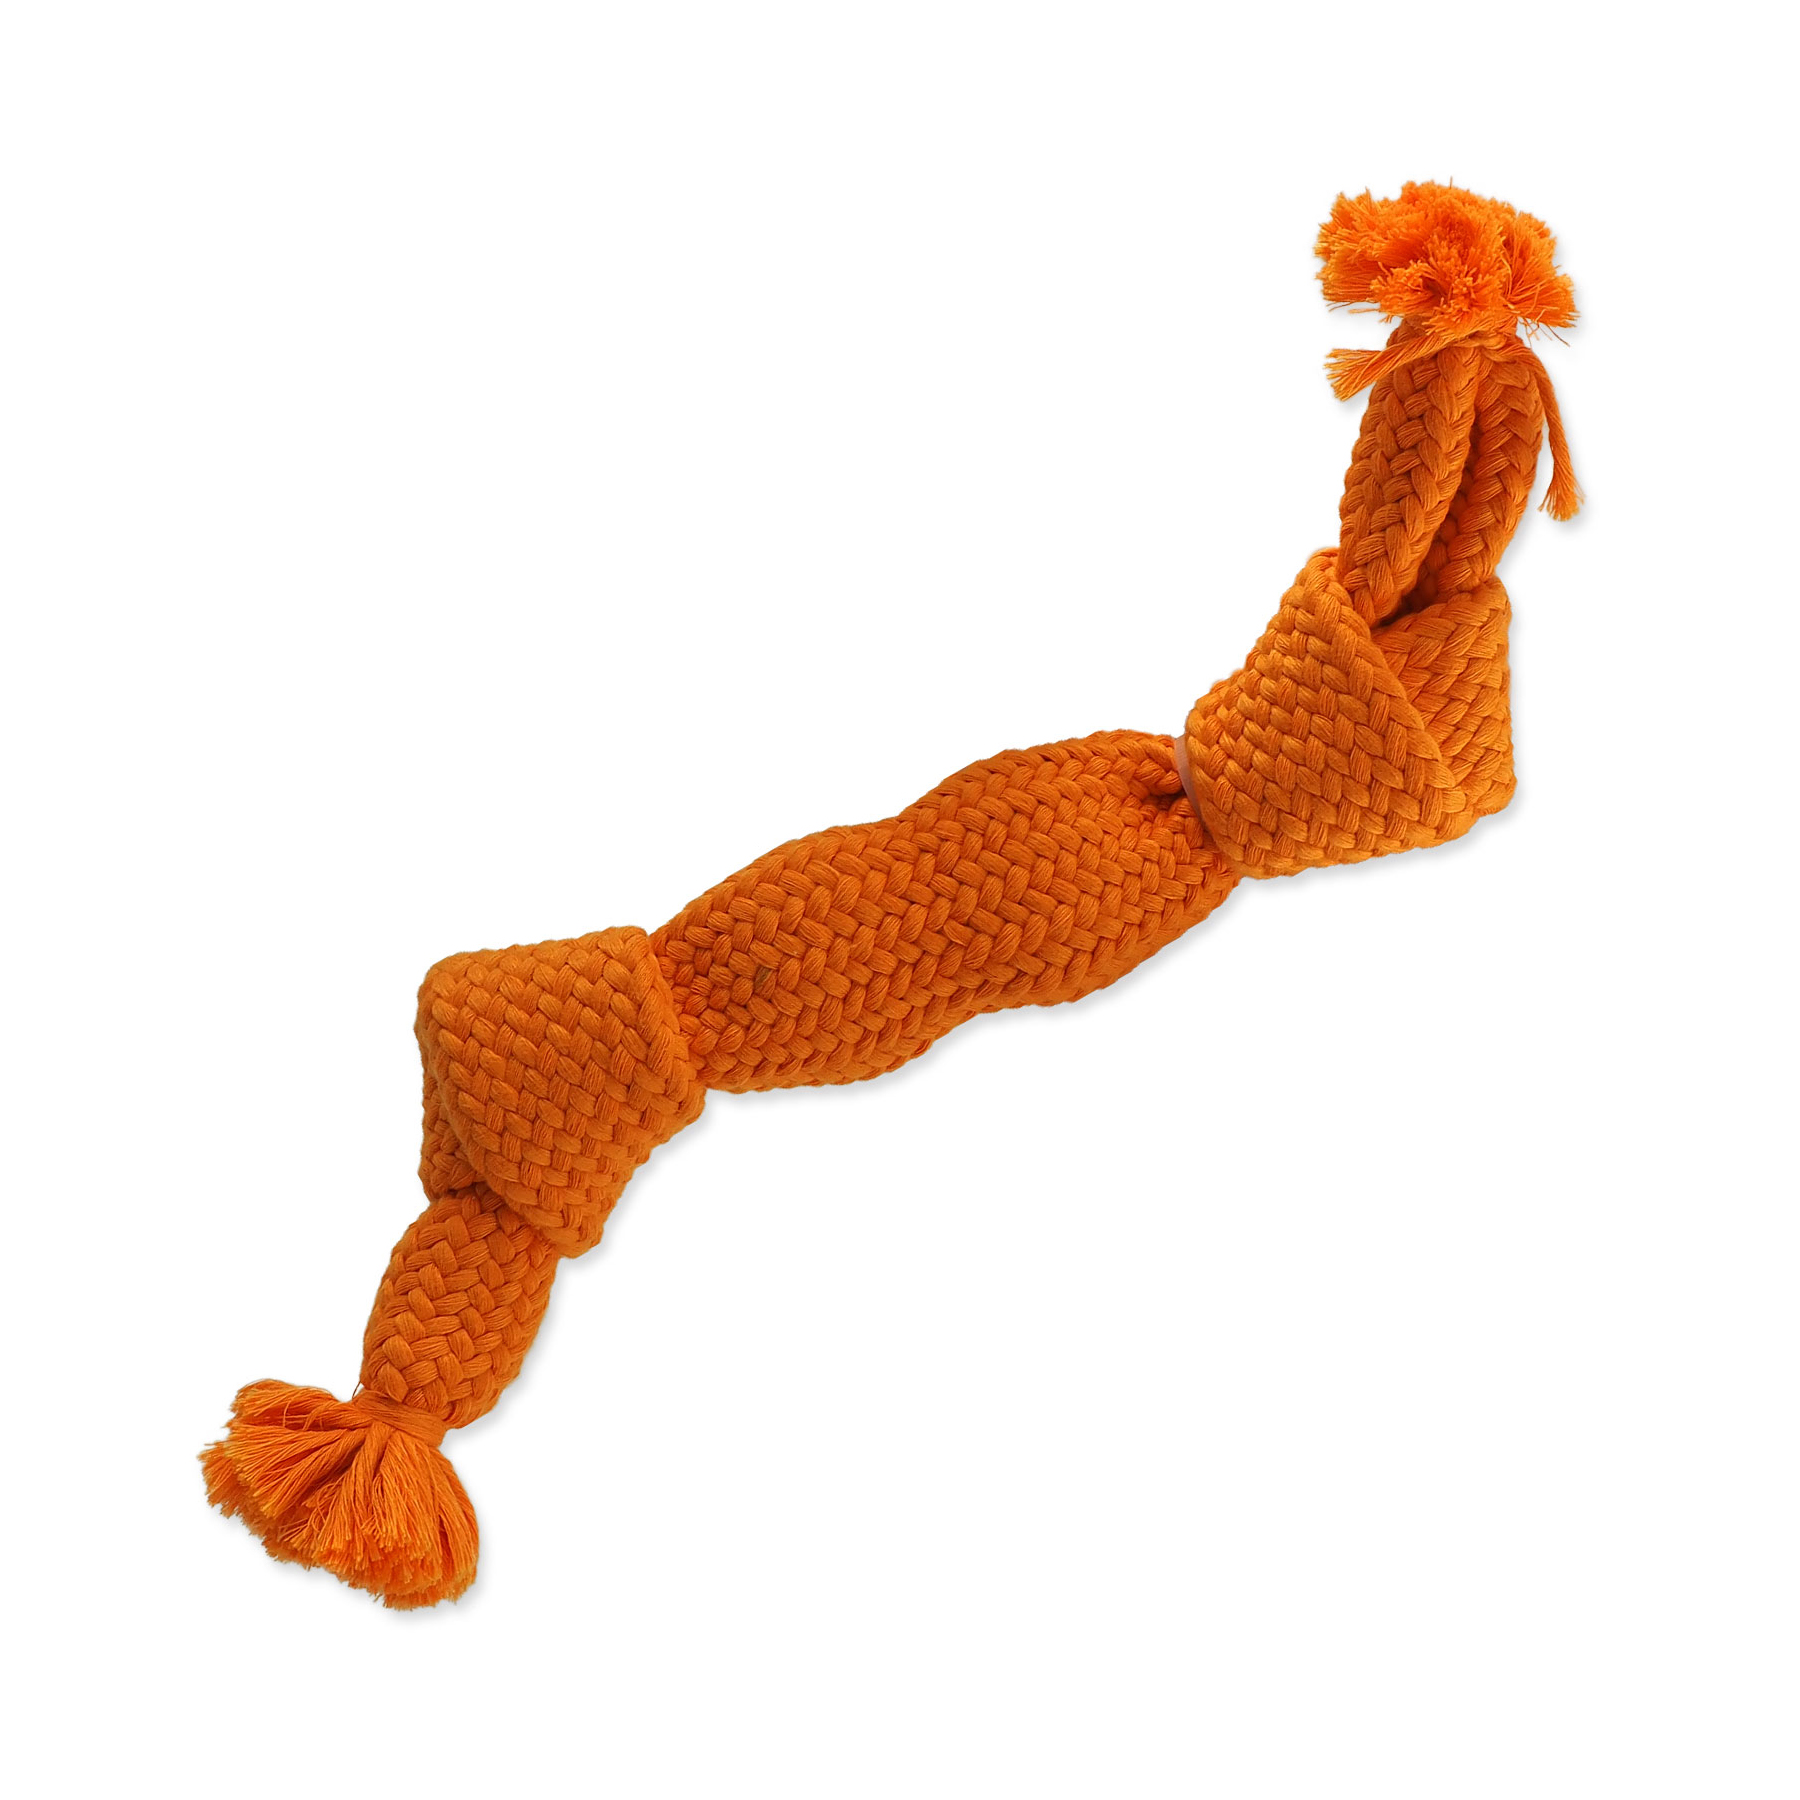 Dog Fantasy Hračka uzel pískací oranžový 2 knoty 35 cm Dog Fantasy